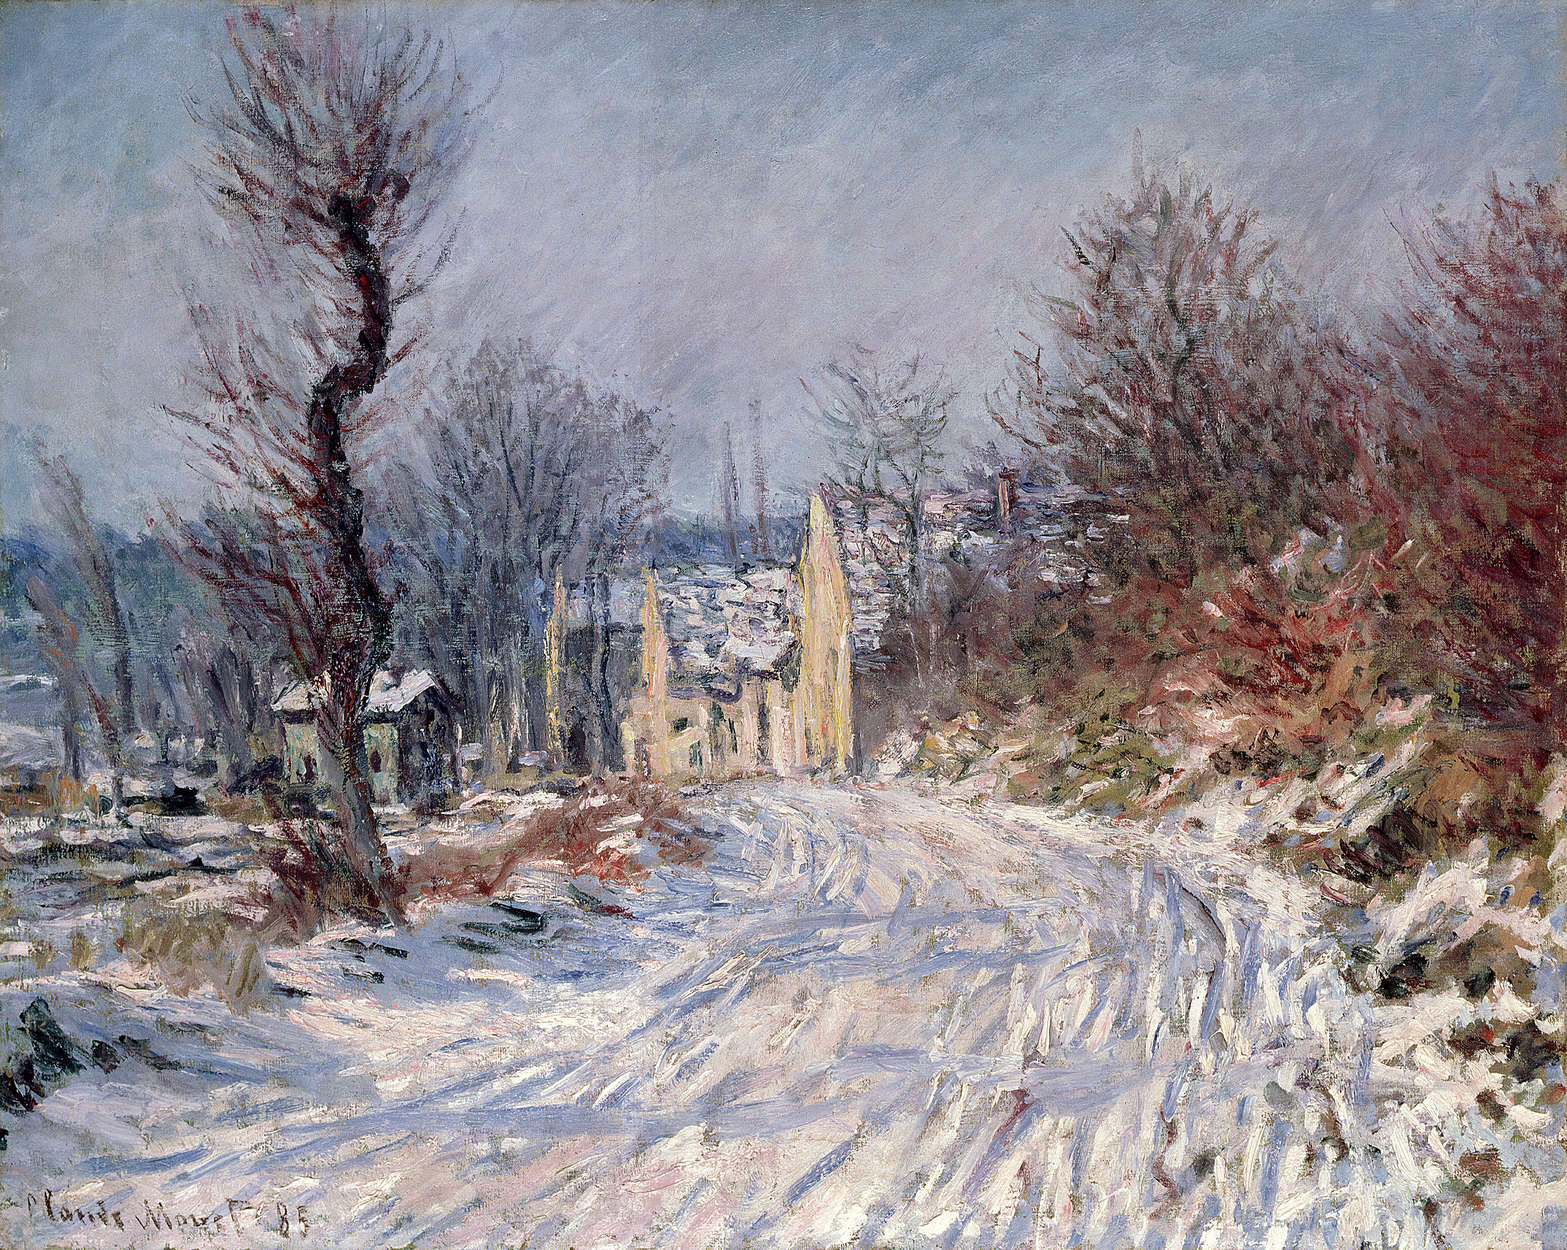             Mural "El camino de Giverny" de Claude Monet
        